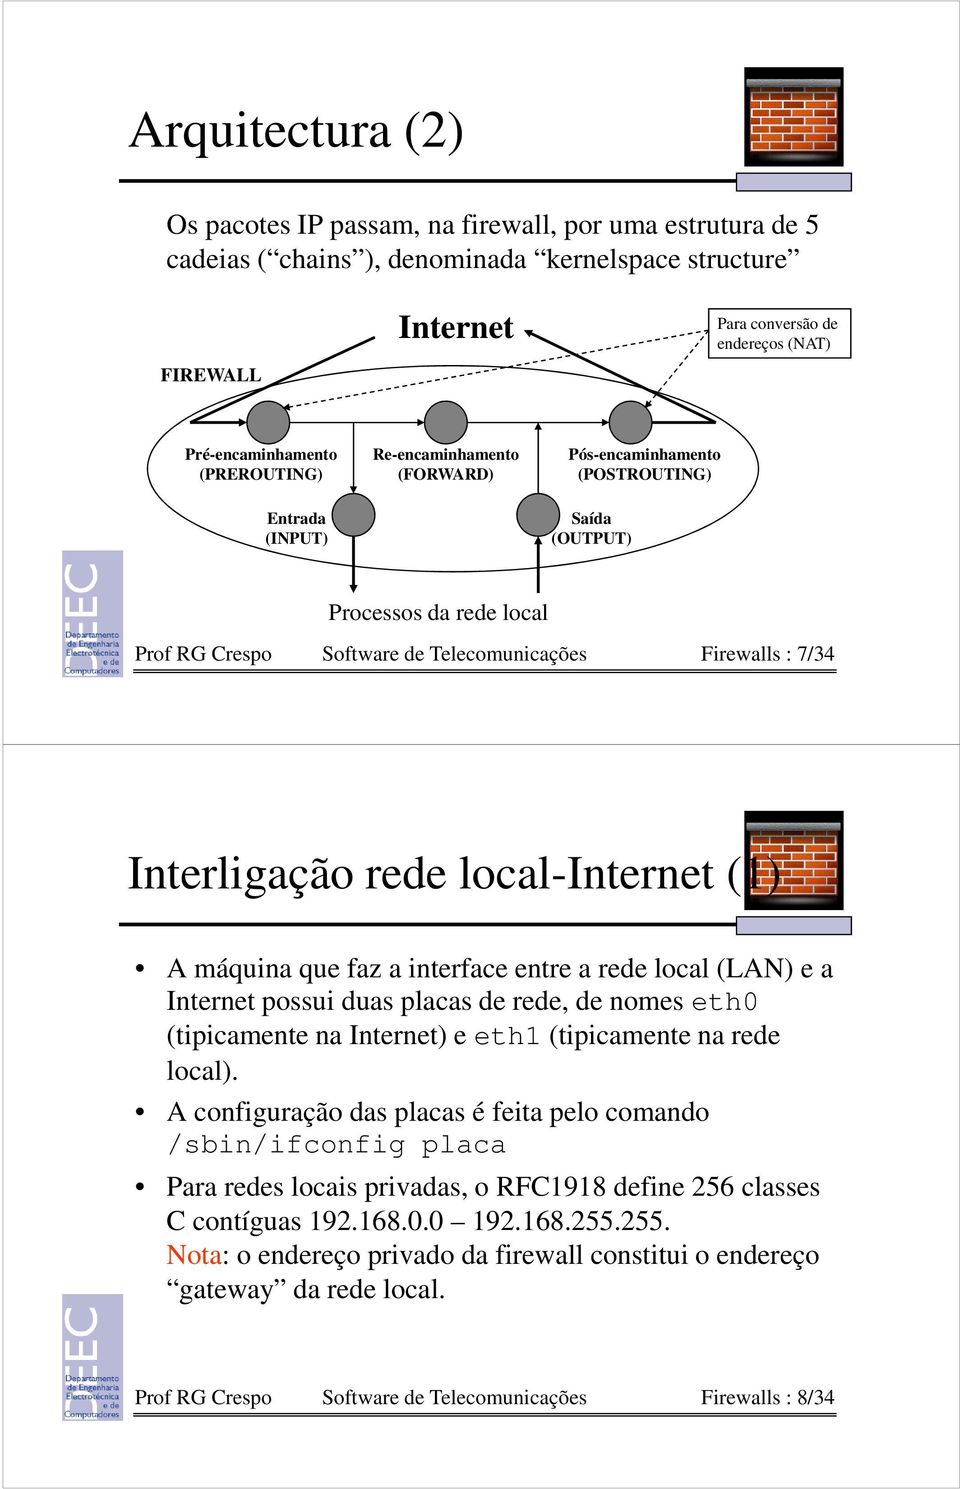 Interligação rede local-internet (1) A máquina que faz a interface entre a rede local (LAN) e a Internet possui duas placas de rede, de nomes eth0 (tipicamente na Internet) e eth1 (tipicamente na